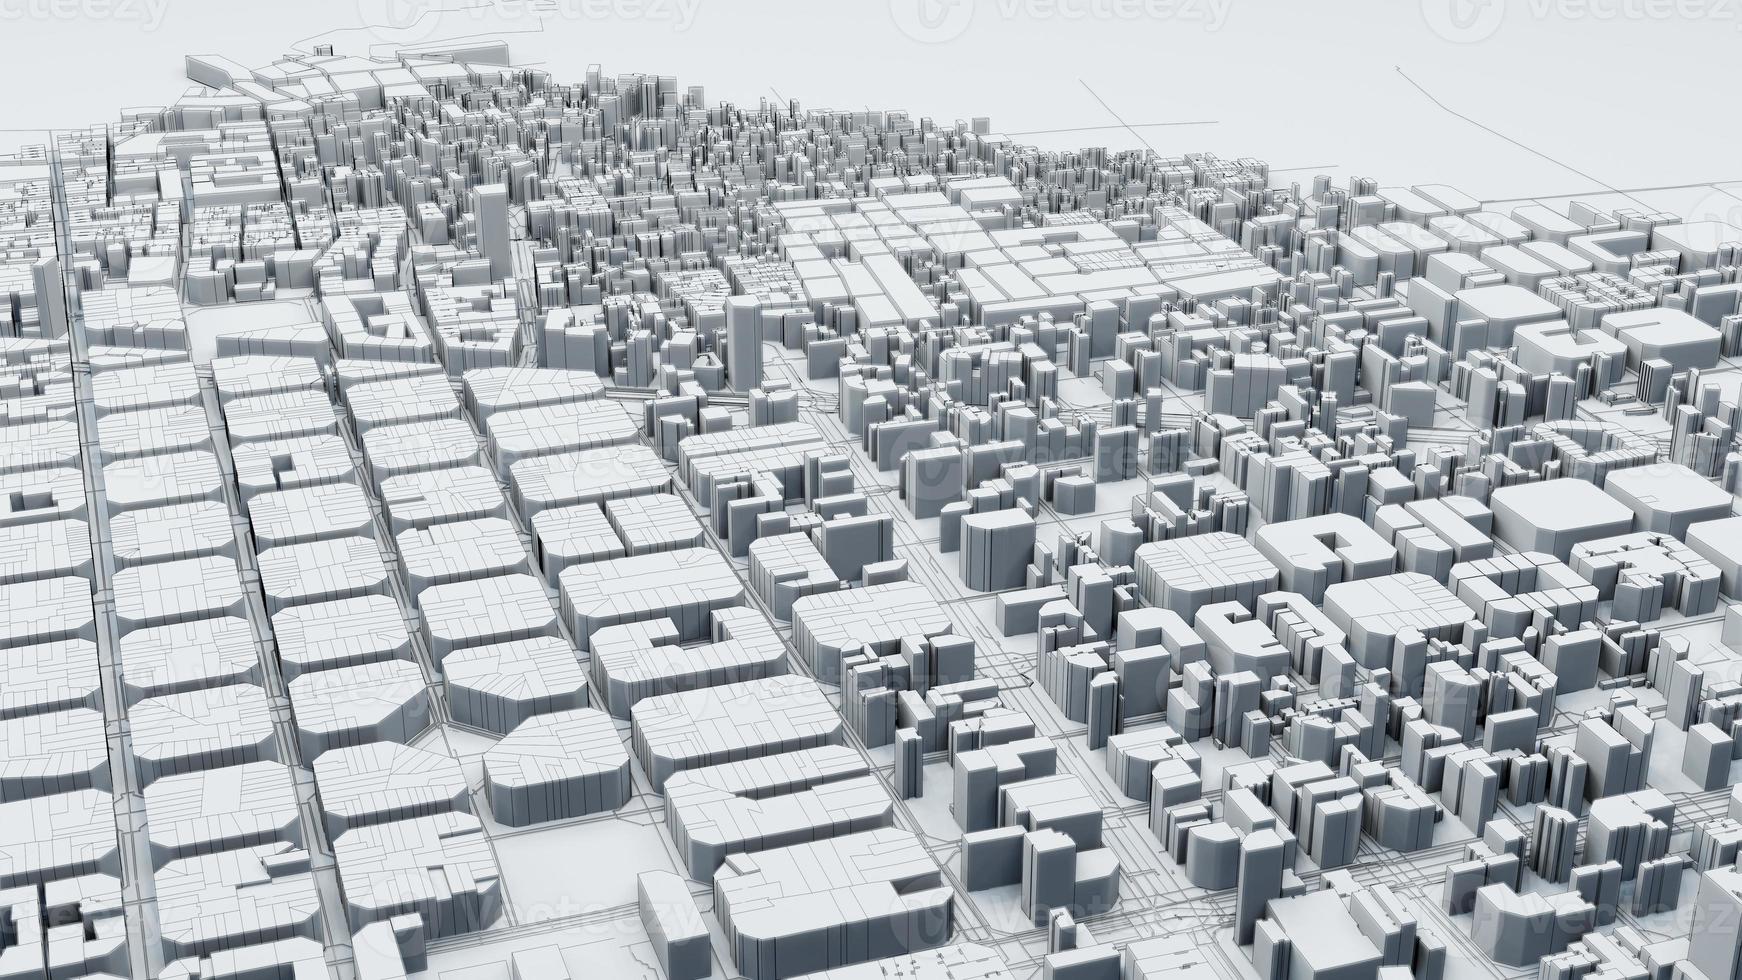 techno mega city concepts de technologie urbaine et futuriste, rendu 3d photo